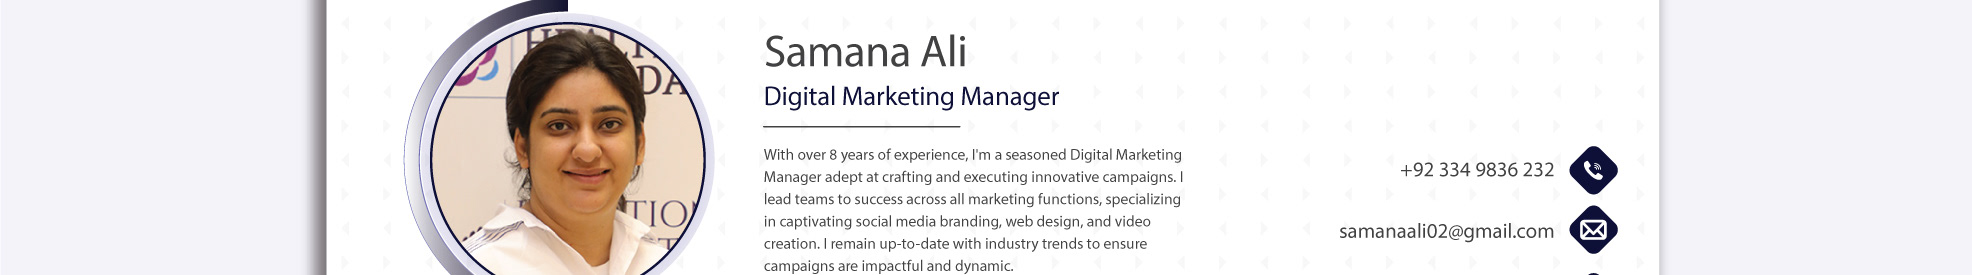 Profil-Banner von Samana Ali